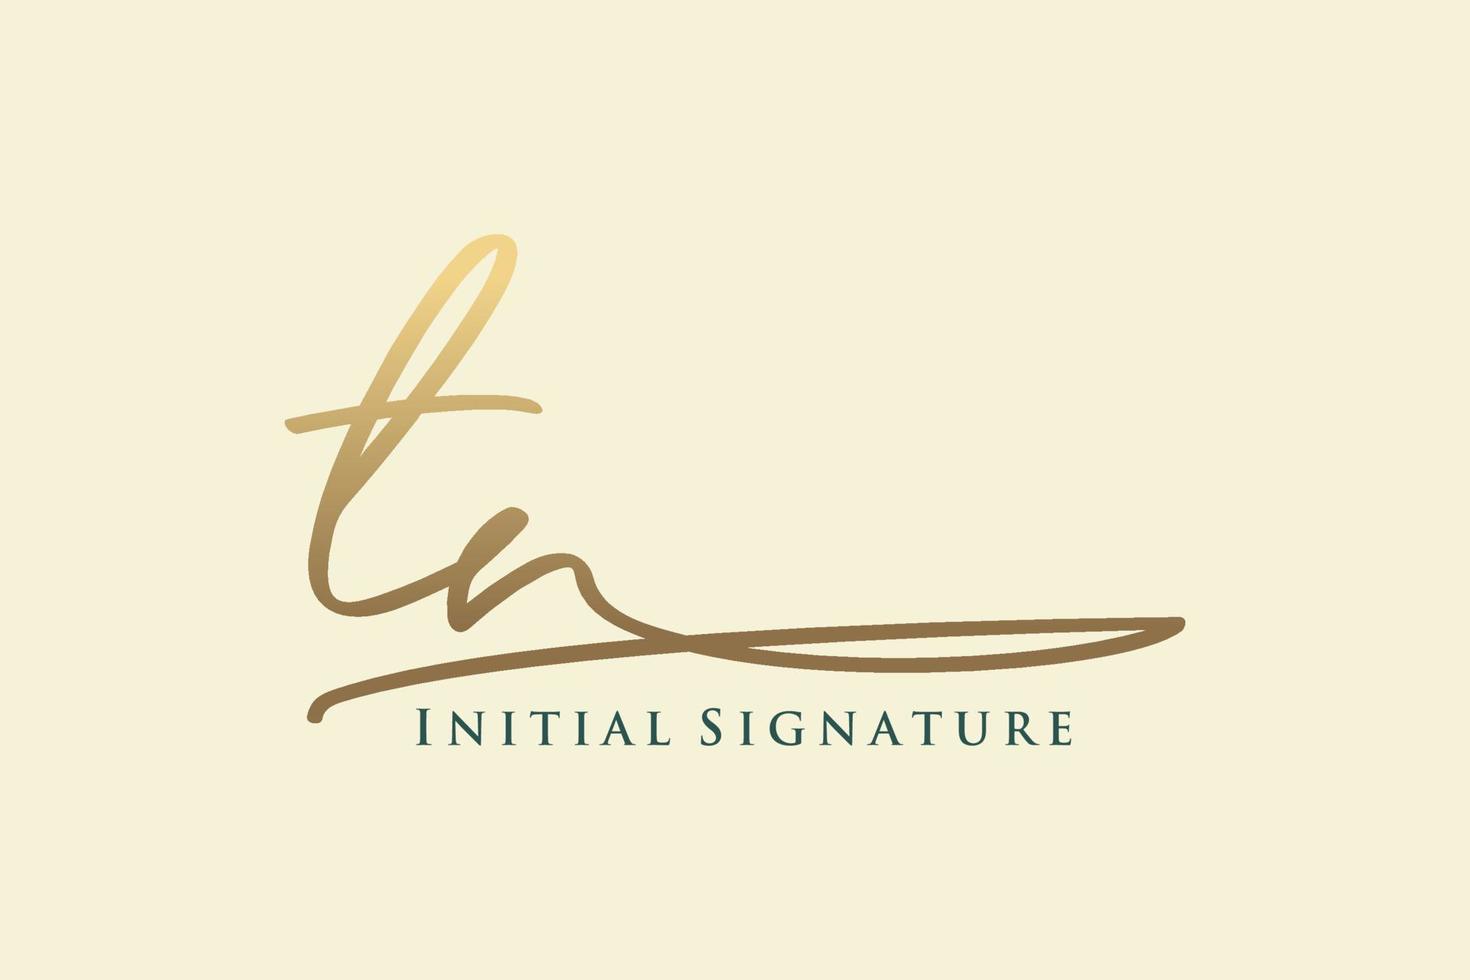 modèle de logo de signature de lettre initiale tn logo de conception élégante. illustration vectorielle de calligraphie dessinée à la main. vecteur